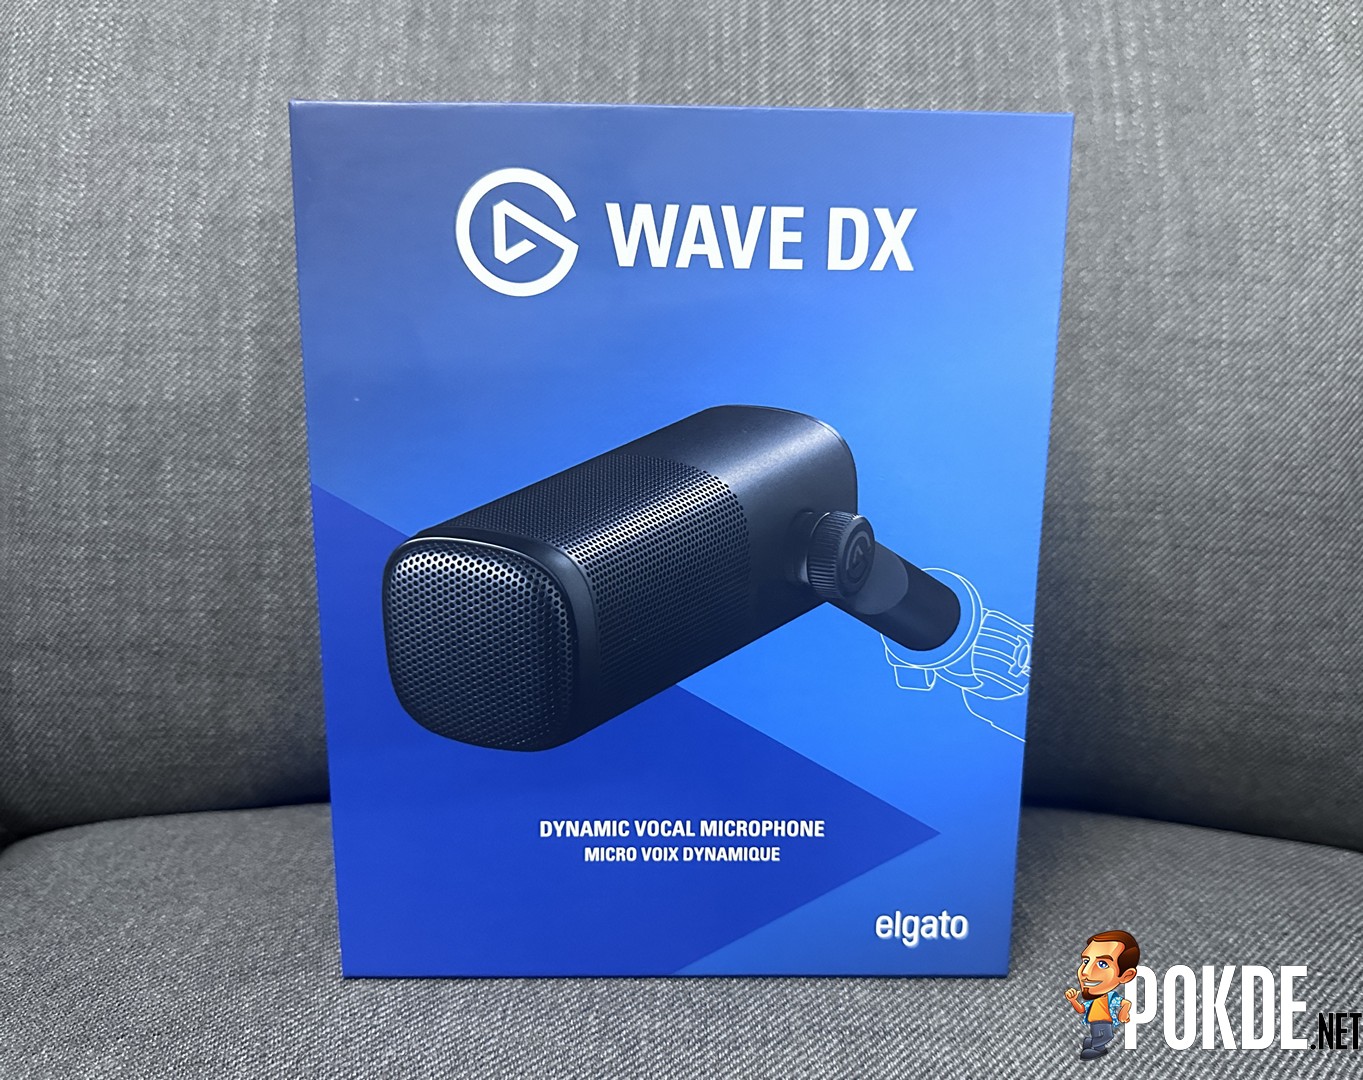 Elgato Wave DX : Test & Avis - GAMEWAVE